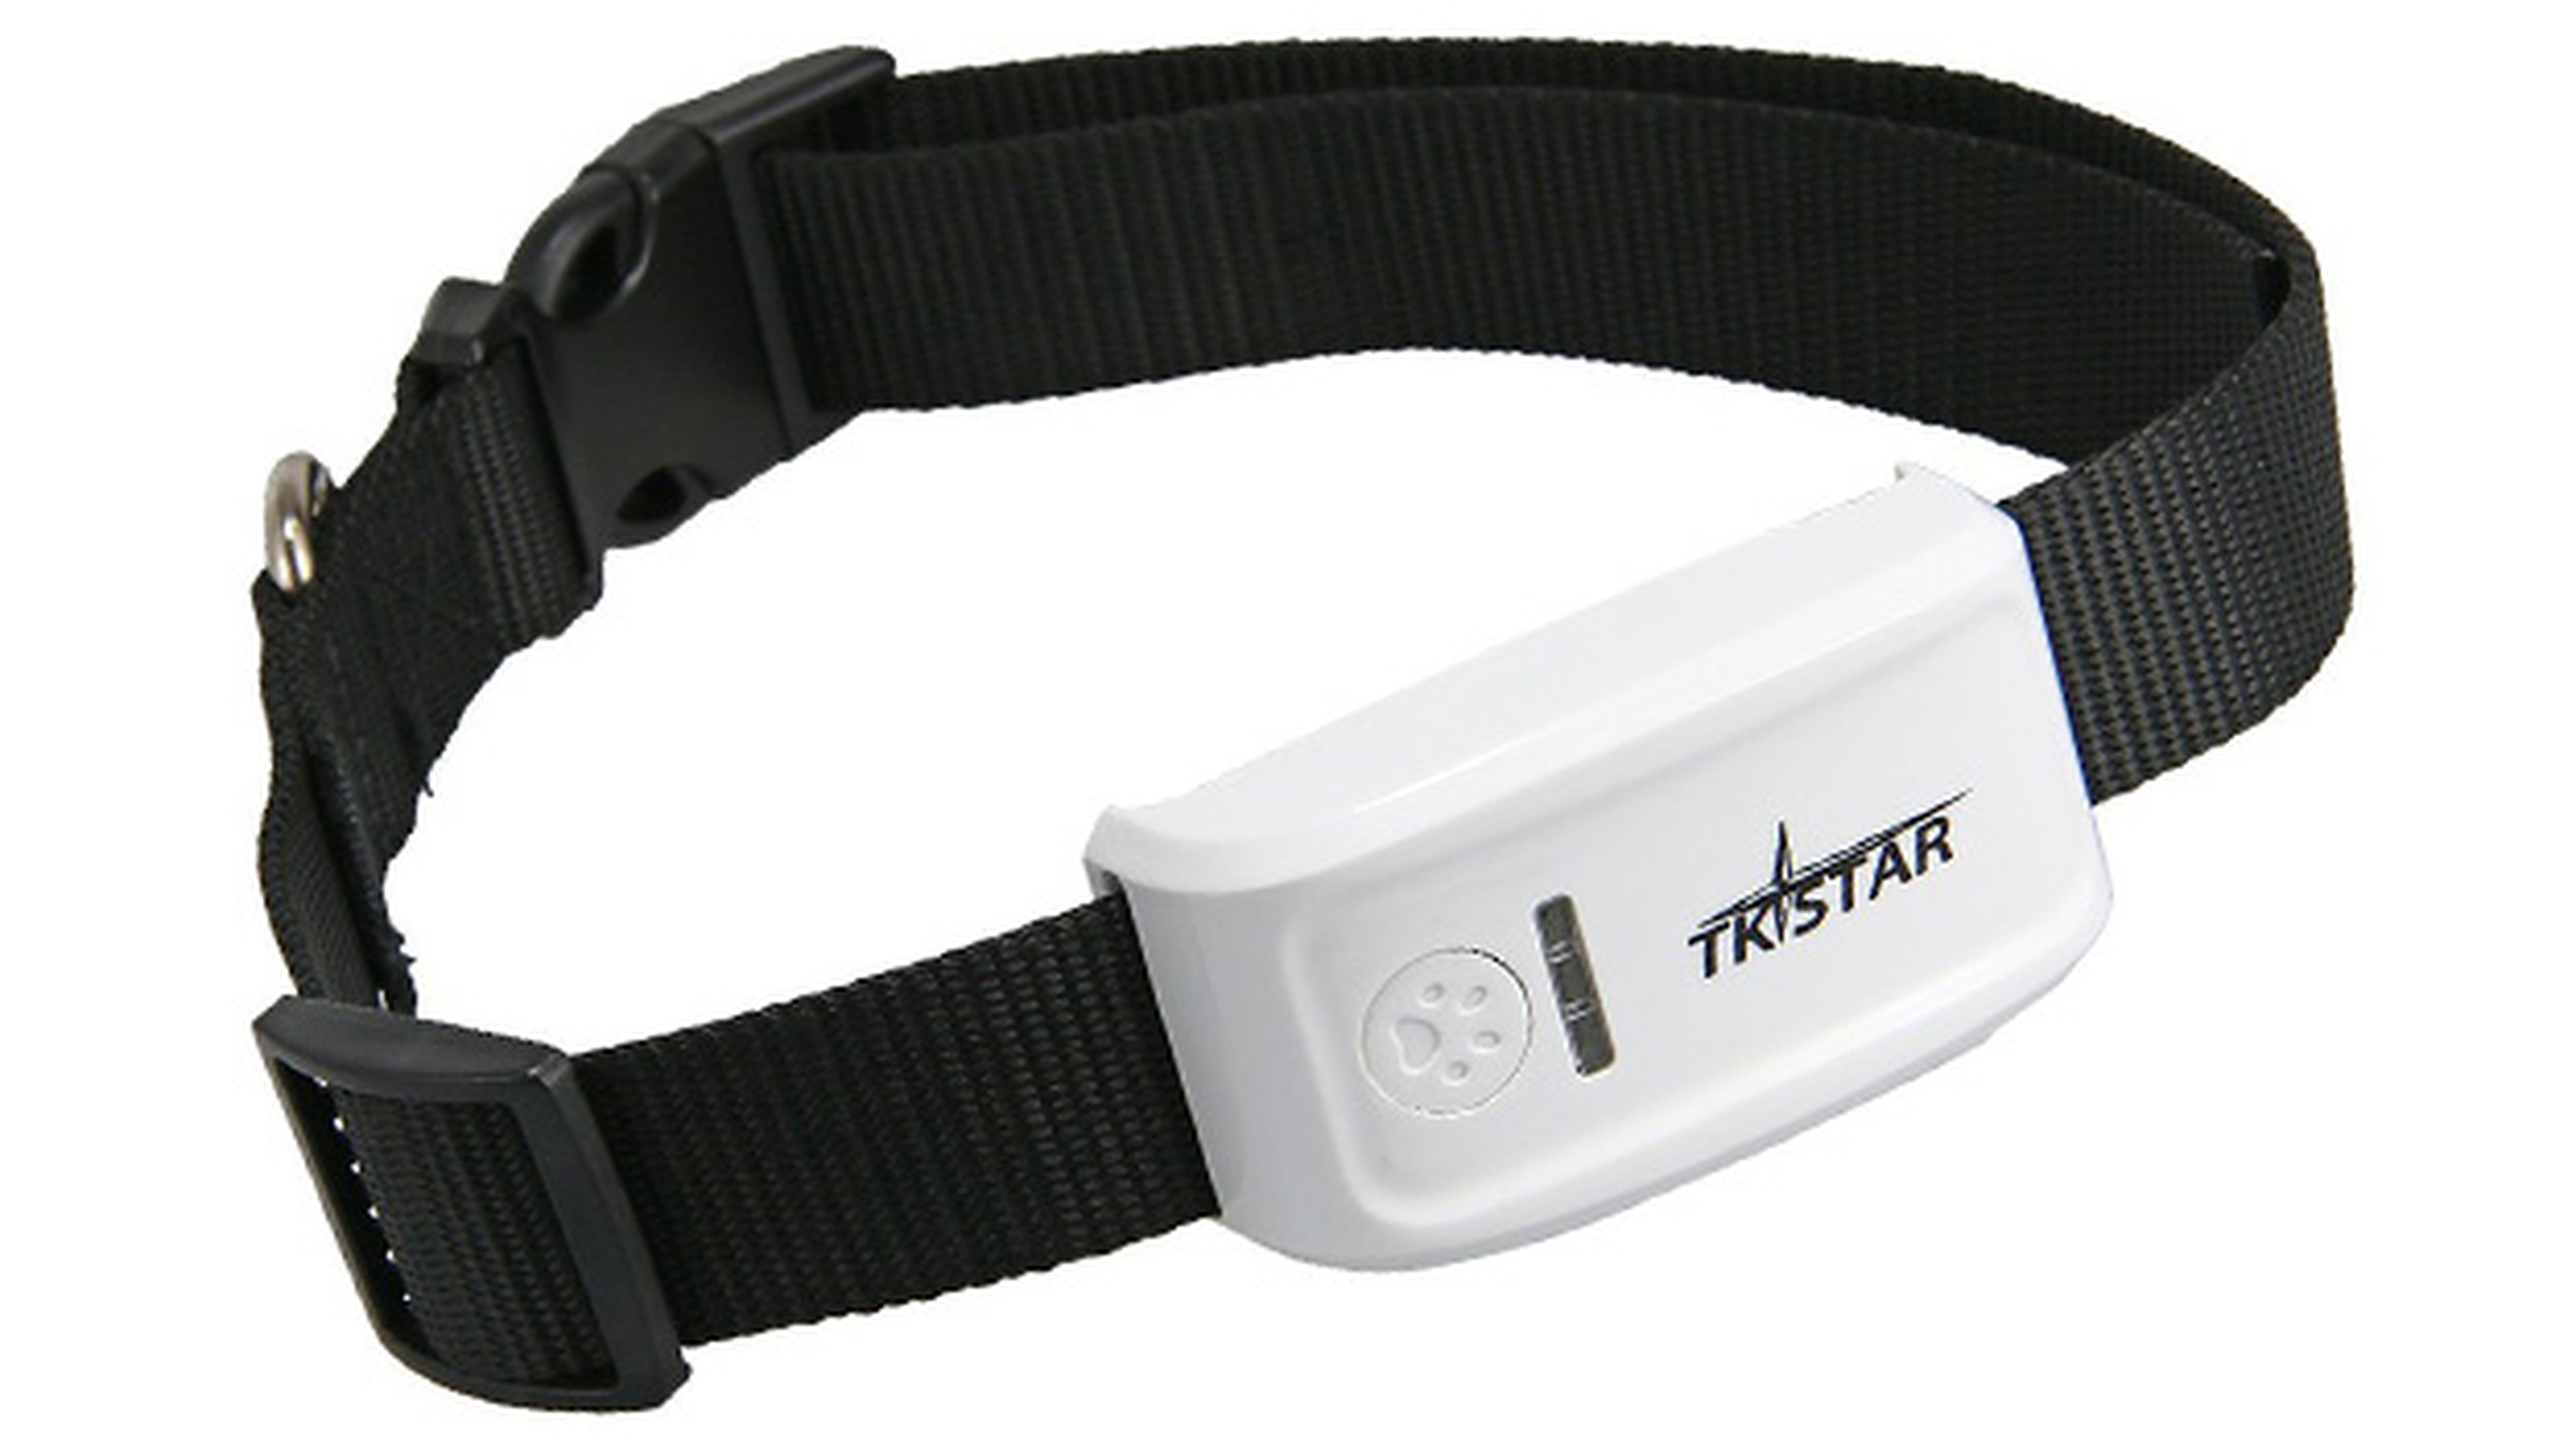 TKSTAR Tracker